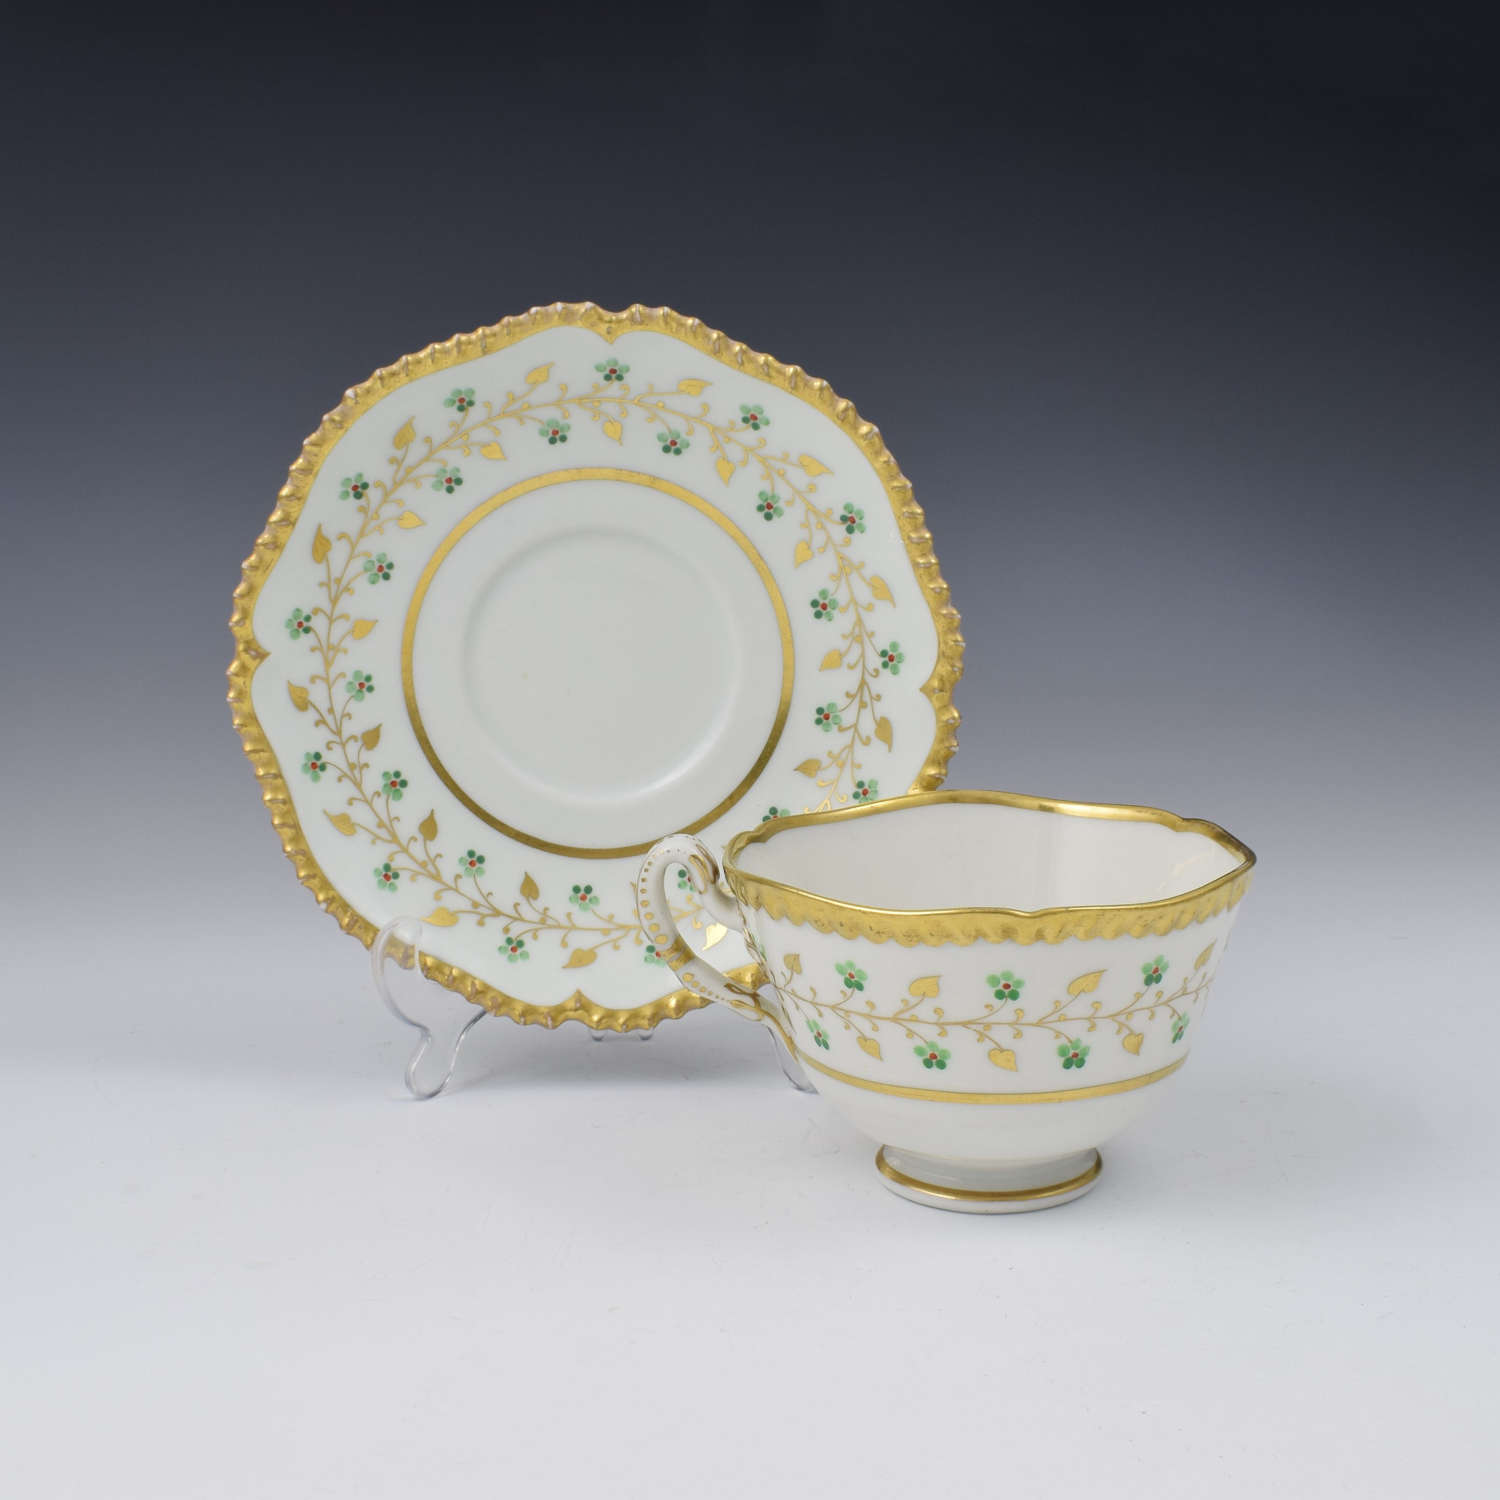 Flight Barr & Barr Worcester Porcelain Gadrooned Tea Cup & Saucer